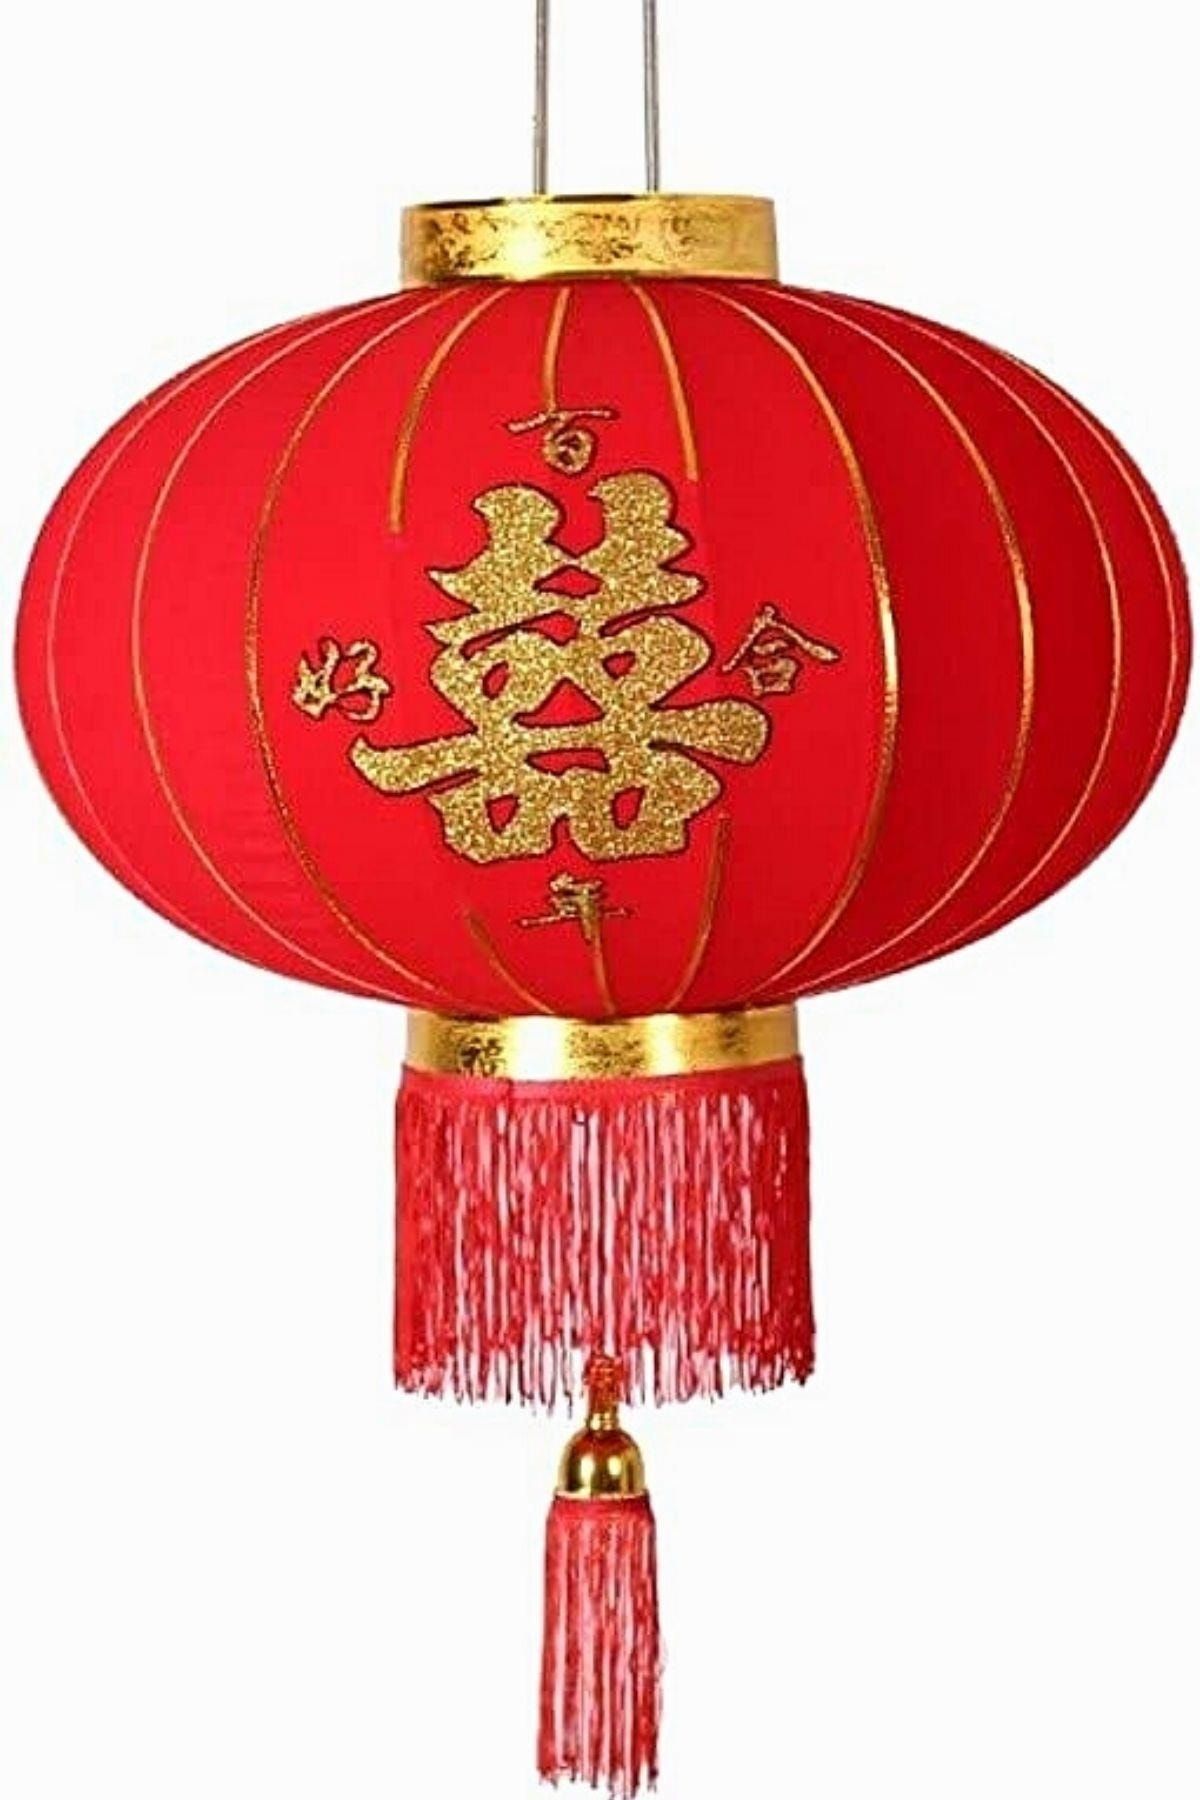 Dünyadan Hediyeler Çin Feneri Festival Parti Dekorasyon Düğün Feneri Kırmızı Kadife Yuvarlak 60 Cm